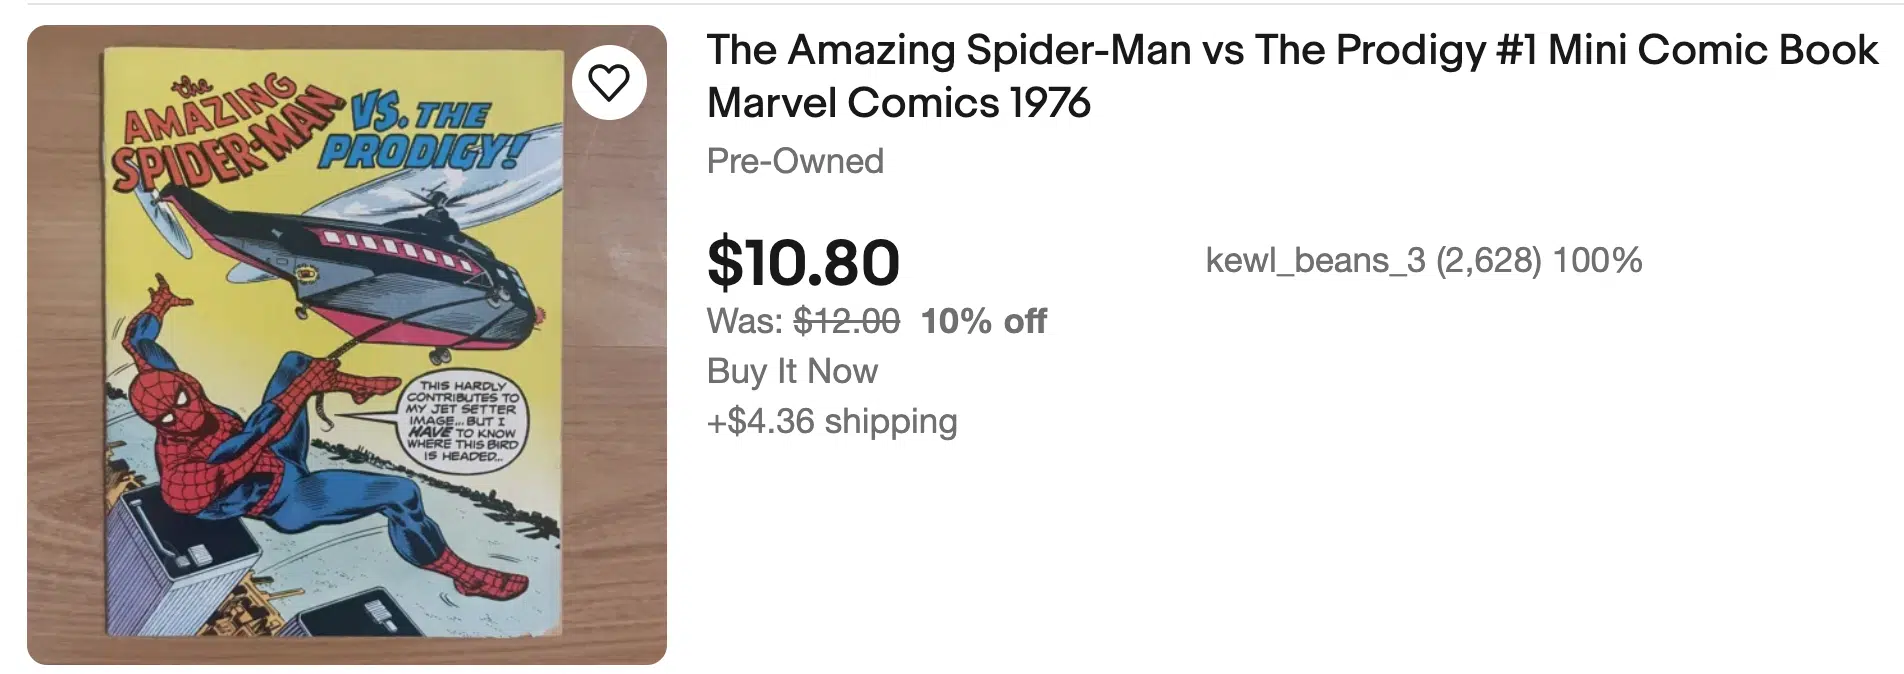 Ebay listing of Spiderman vs the Prodigy